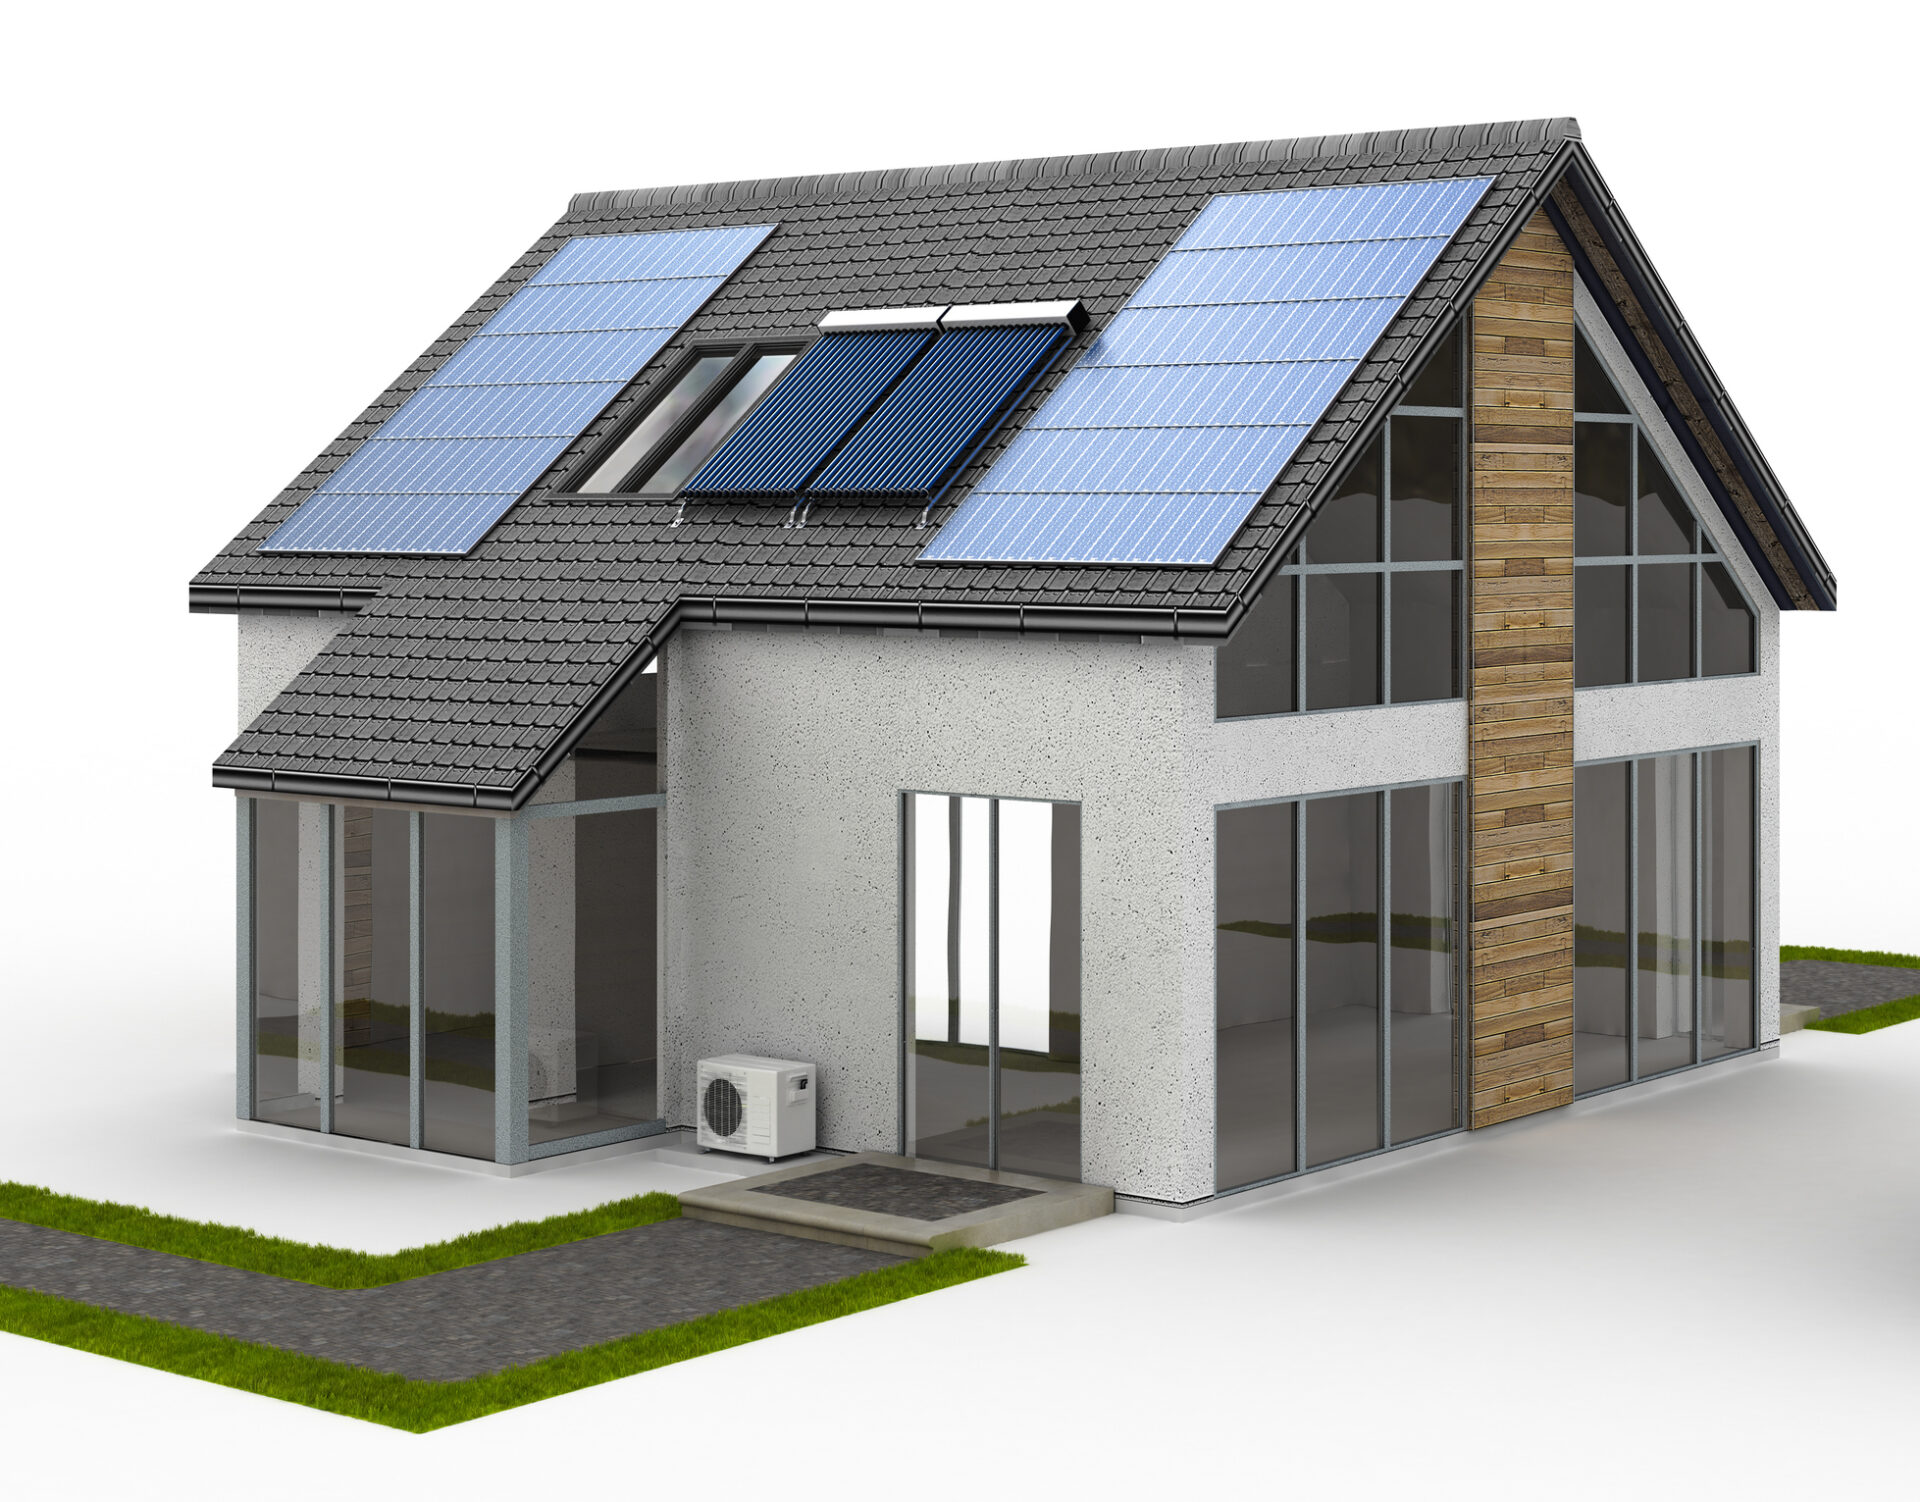 Maketa energeticky úsporného domu s tepelným čerpadlom i fotovoltikou